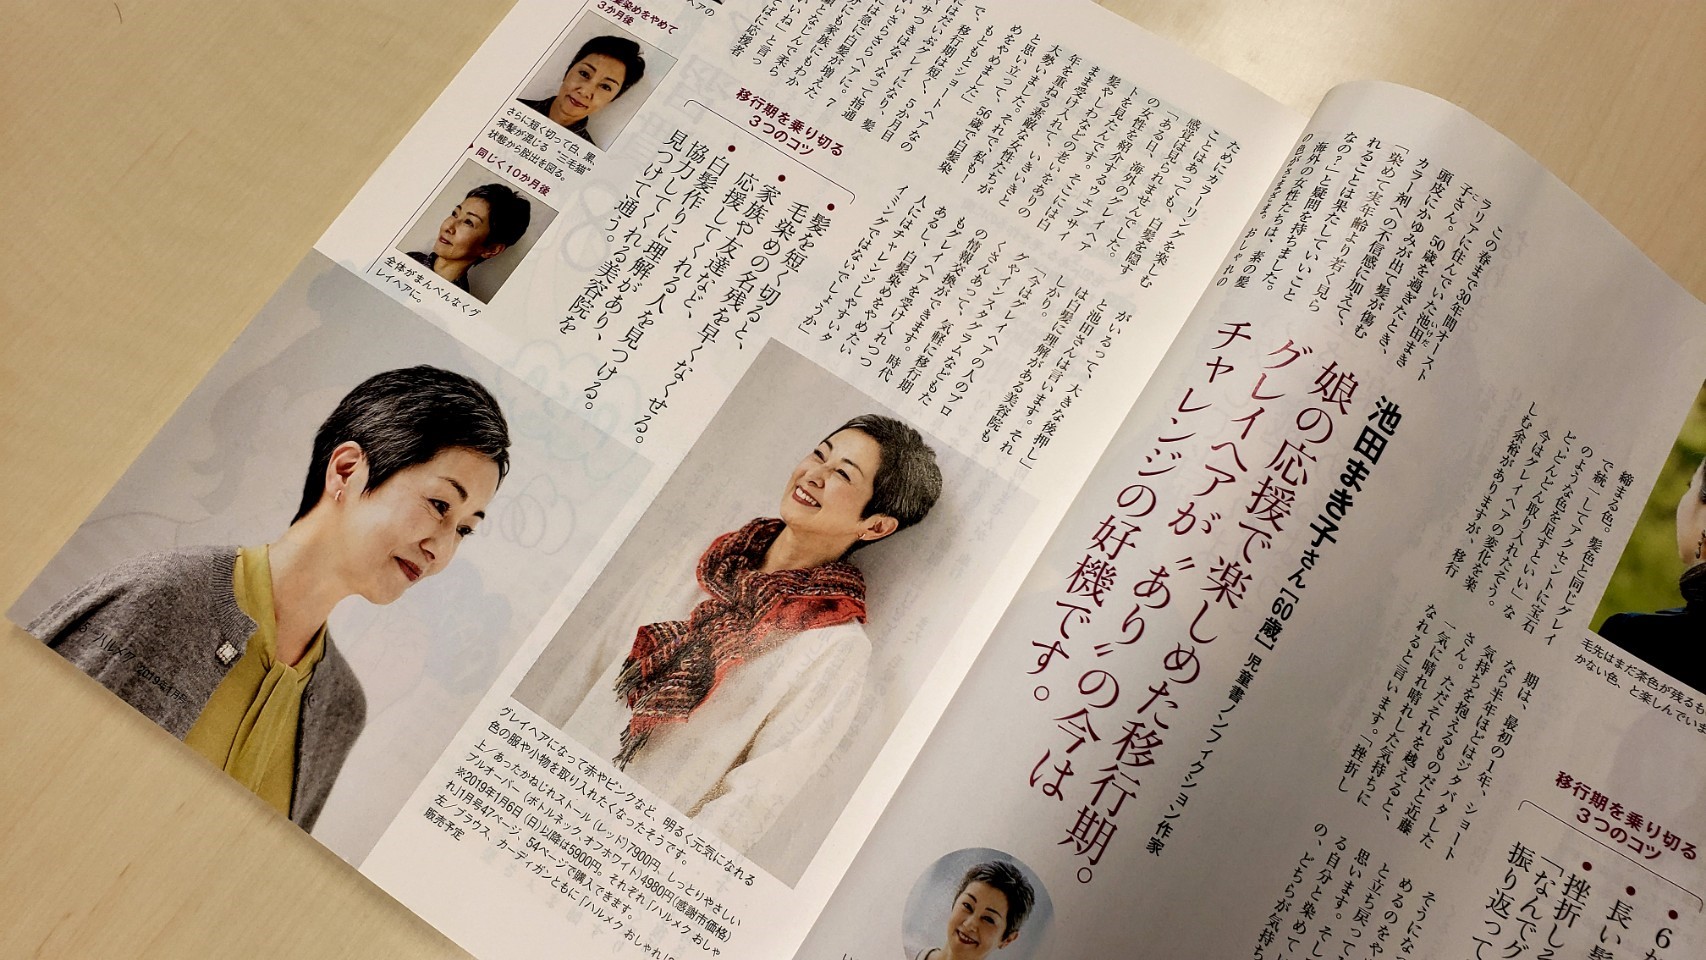 2019年1月号「ハルメク」では、池田さんのインタビューを掲載し、読者のみなさんから大きな反響がありました